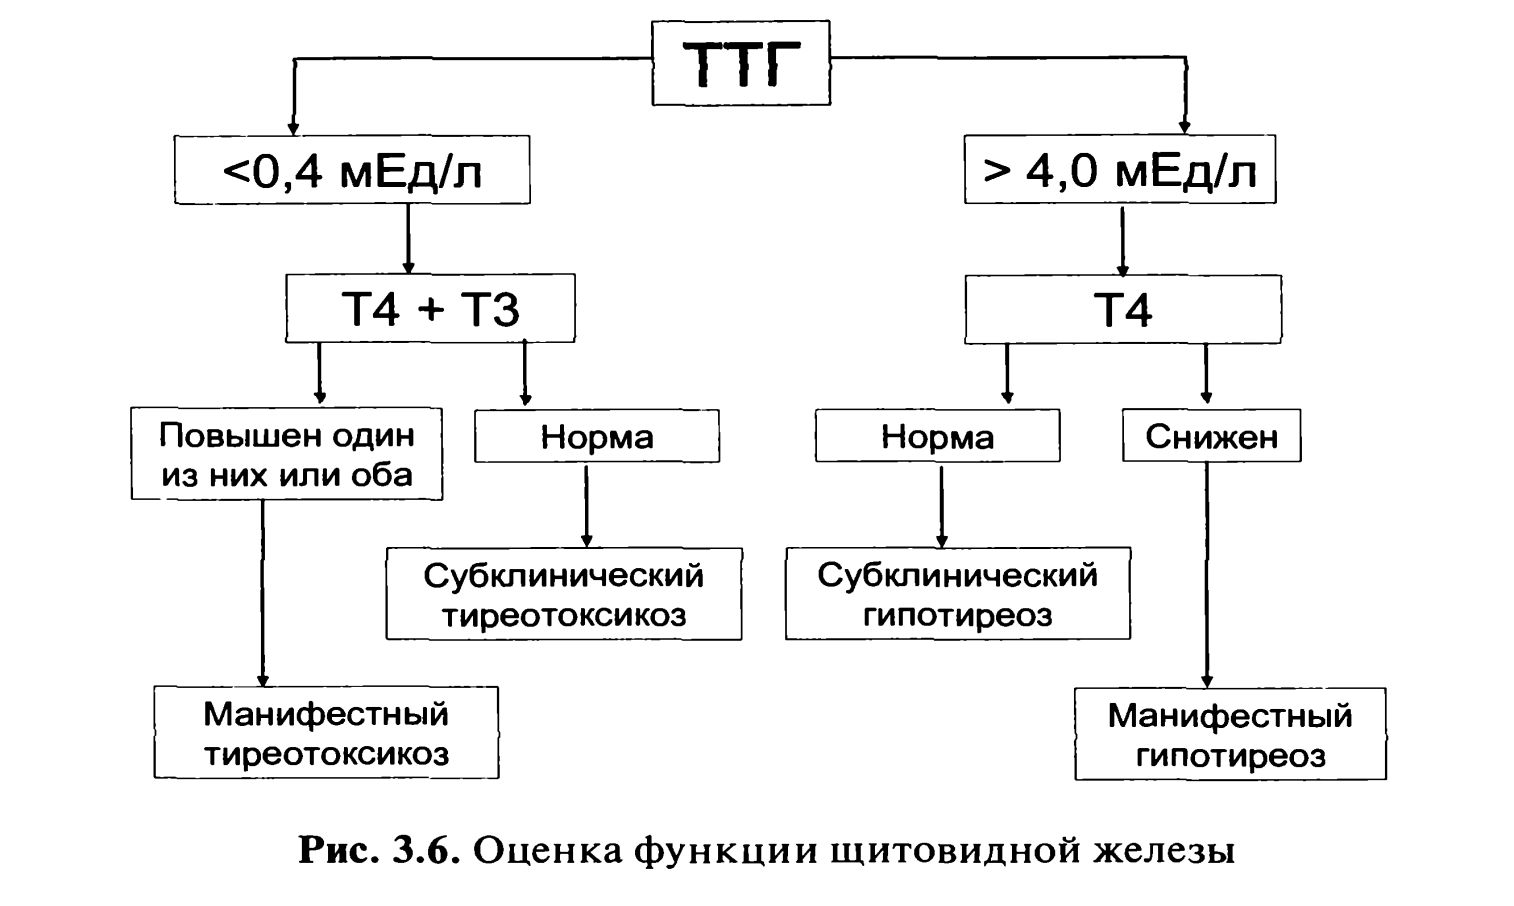 Щитовидная железа высокий ттг. Гипотиреоз при нормальном ТТГ т3 т4. Низкий т4 при нормальном ТТГ И повышенном т3. Снижен т3 при нормальном ТТГ. Норма показателей ТТГ т3 т4.